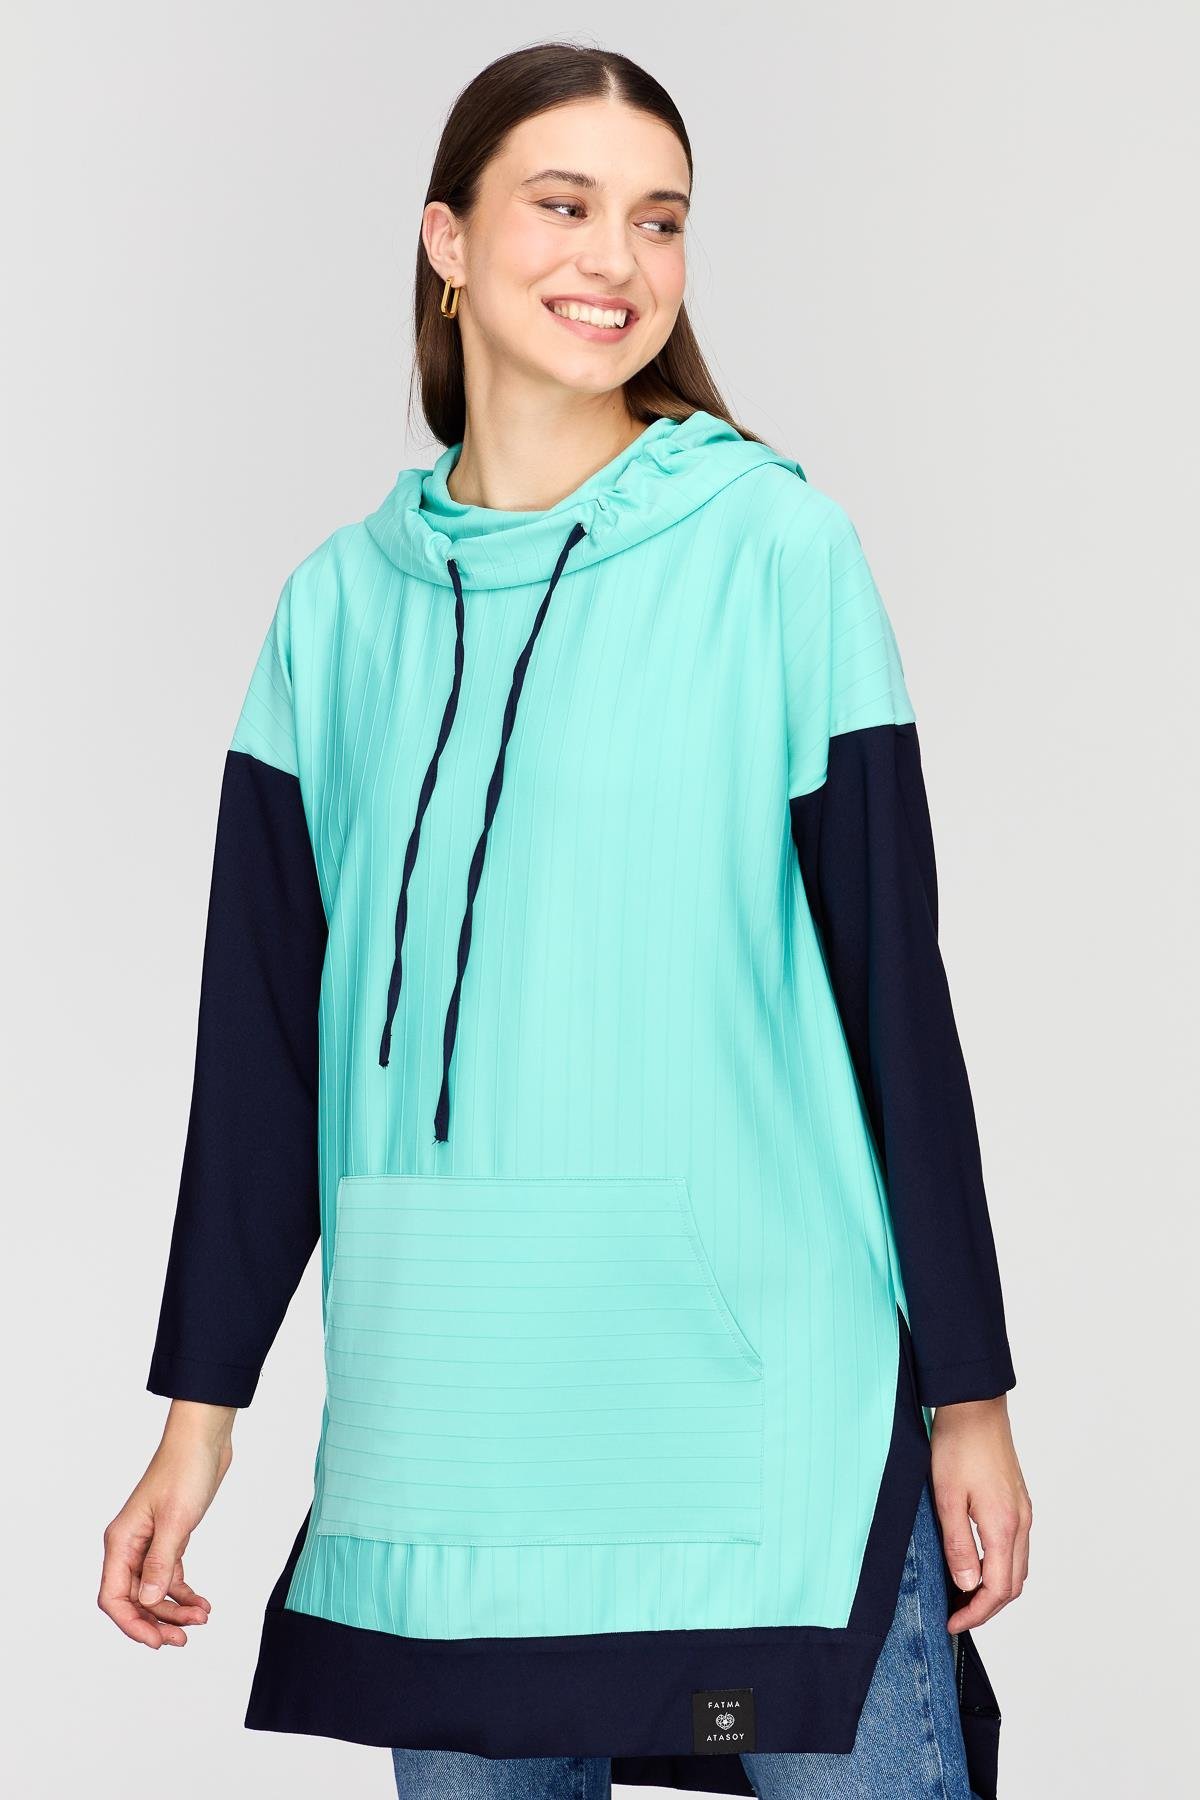 Çift Renk Sweatshirt Mint - Fatma Atasoy